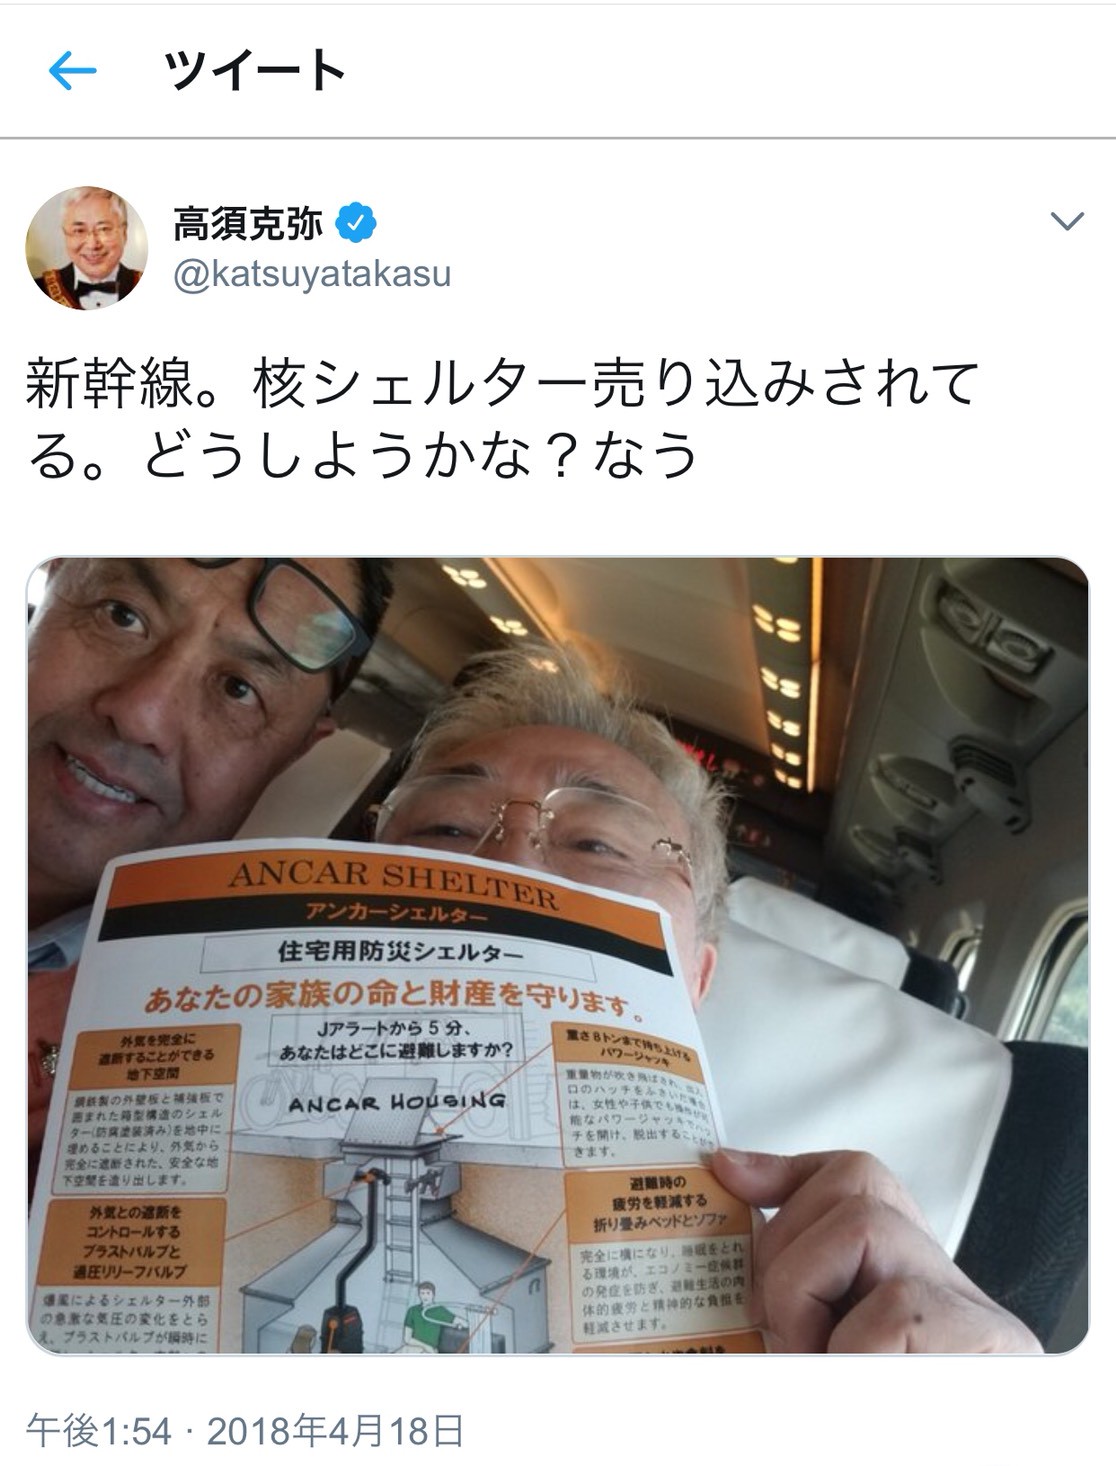 クリニック ツイッター 高須 高須院長 愛知県知事リコール周知へ新聞広告にＯＫサイン「感謝。なう」